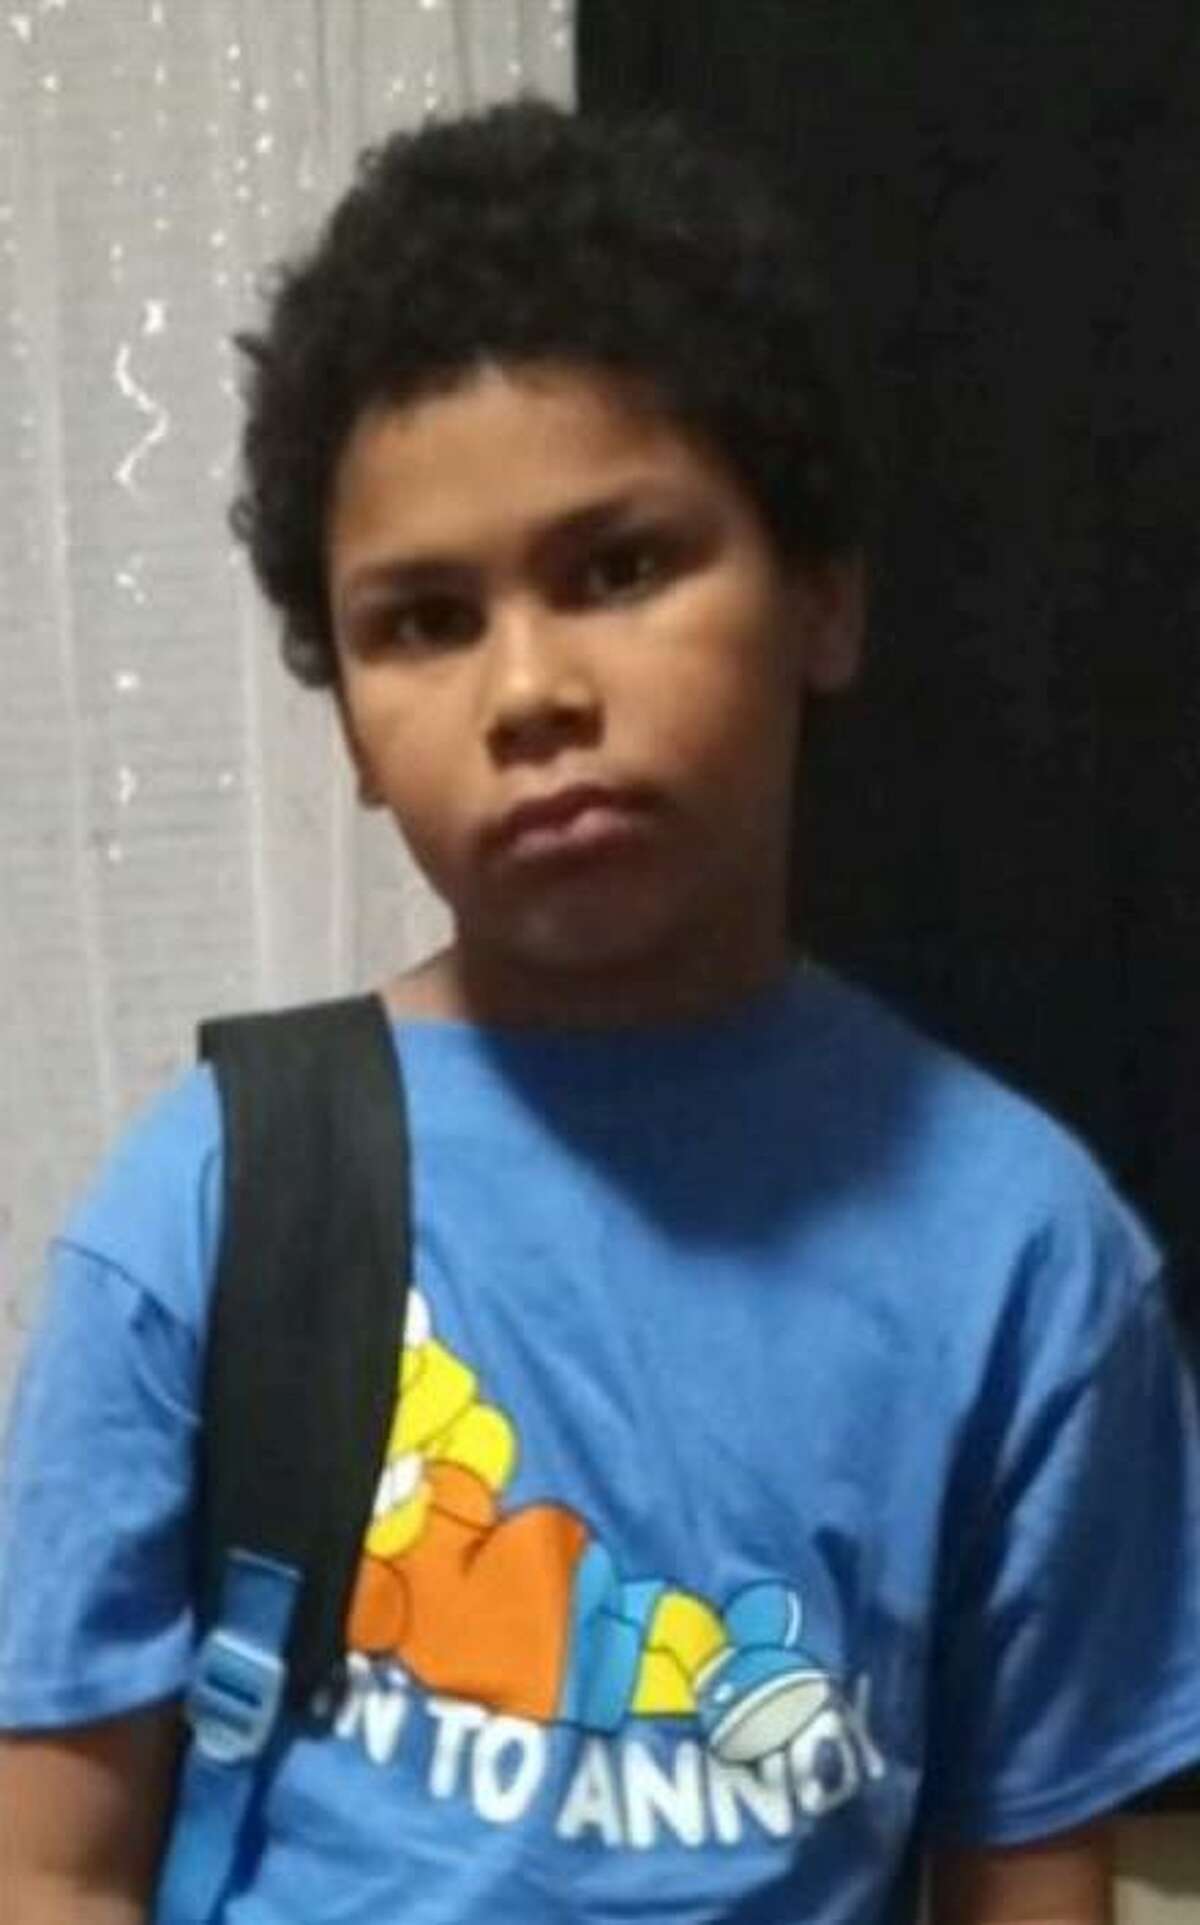 Jordan Hernandez, 8, was last seen in the 1800 block of Bandera Road on Jan. 13, 2022.